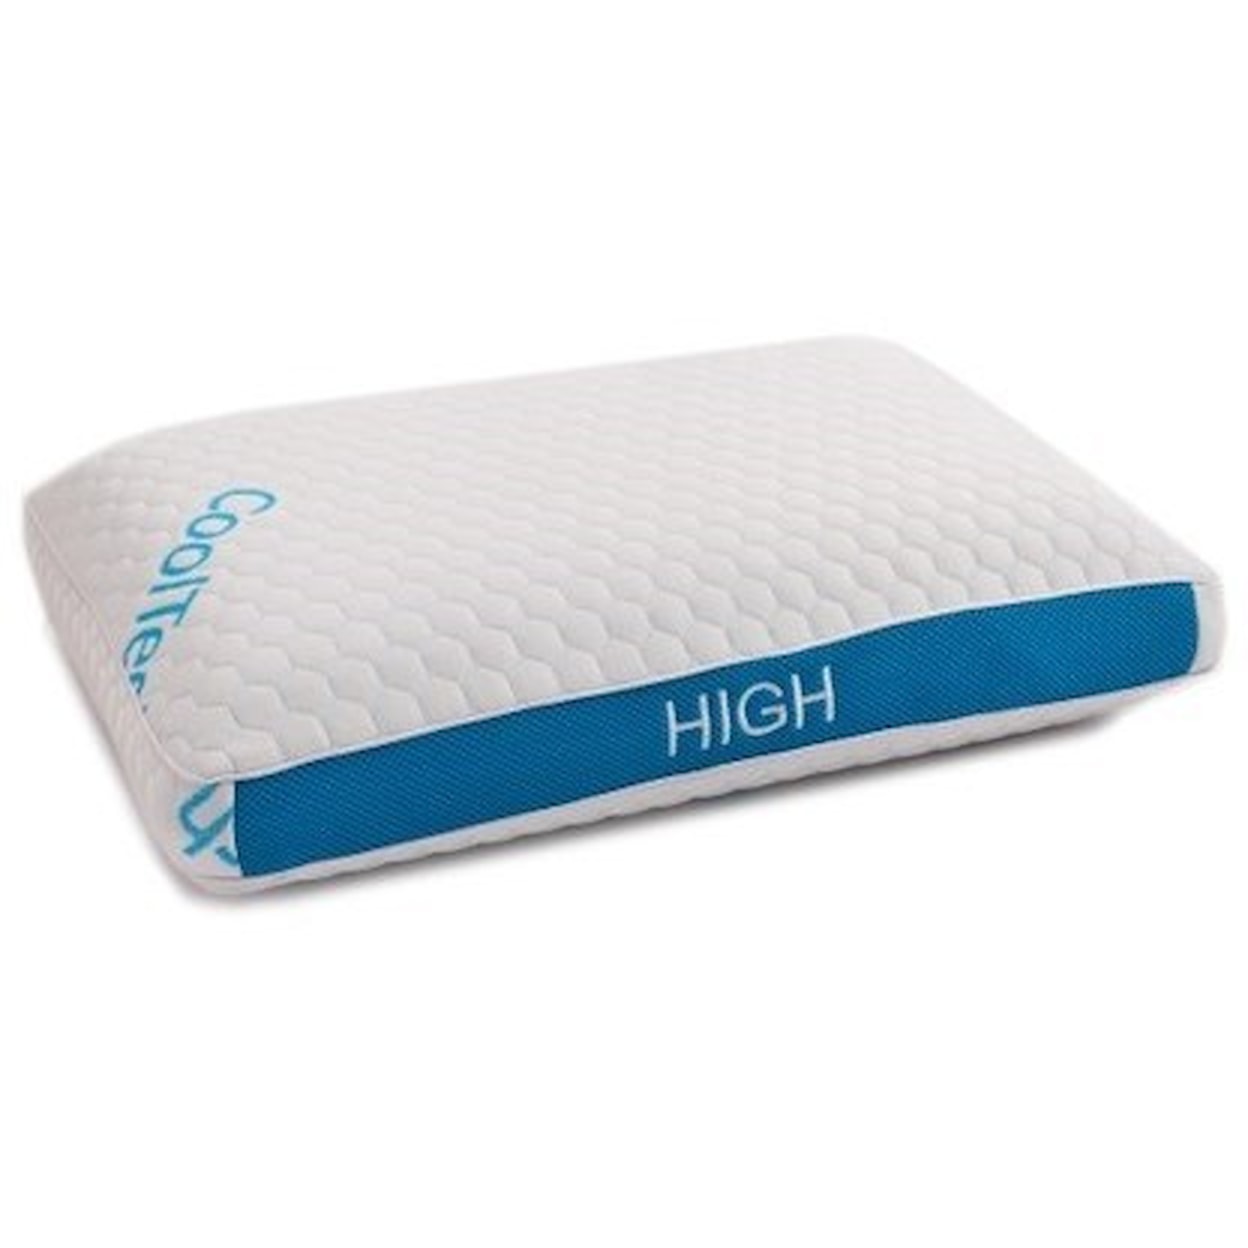 BedTech CoolTech Pillows Cooltech High Standard Pillow